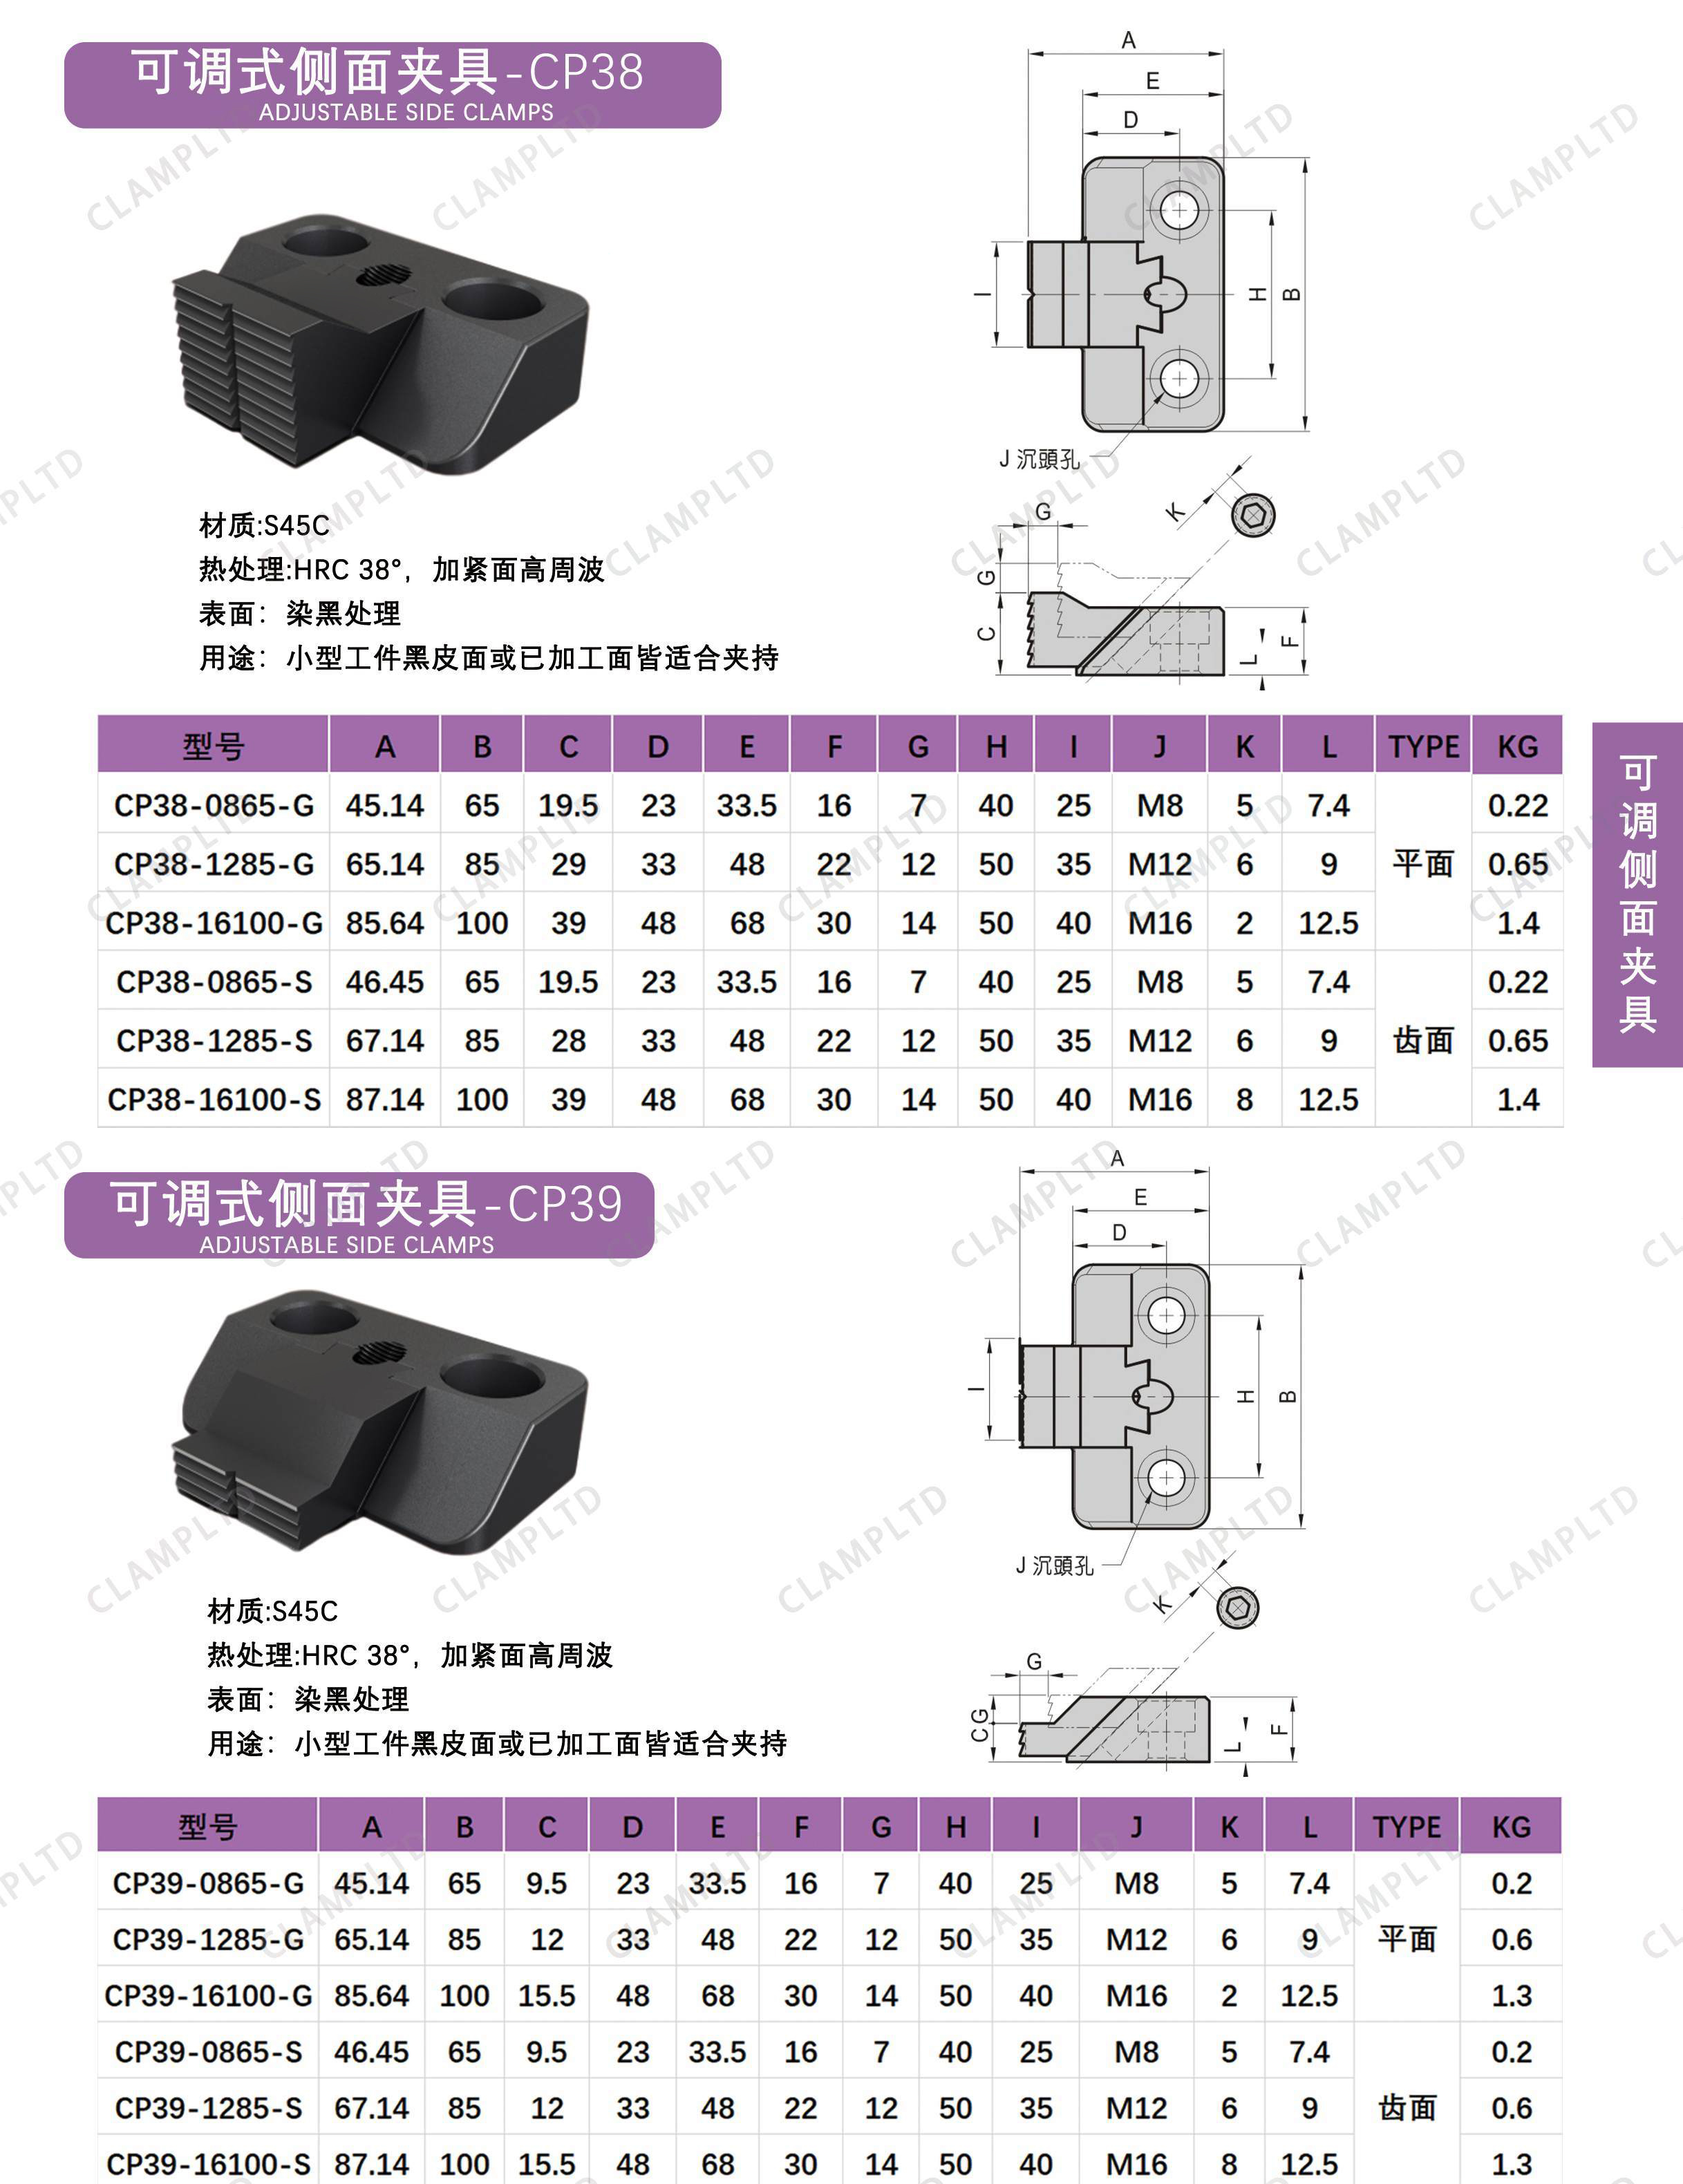 可调式侧面夹具  CP-38、CP-39 第1张 可调式侧面夹具   CP-38、CP-39 夹具标准件